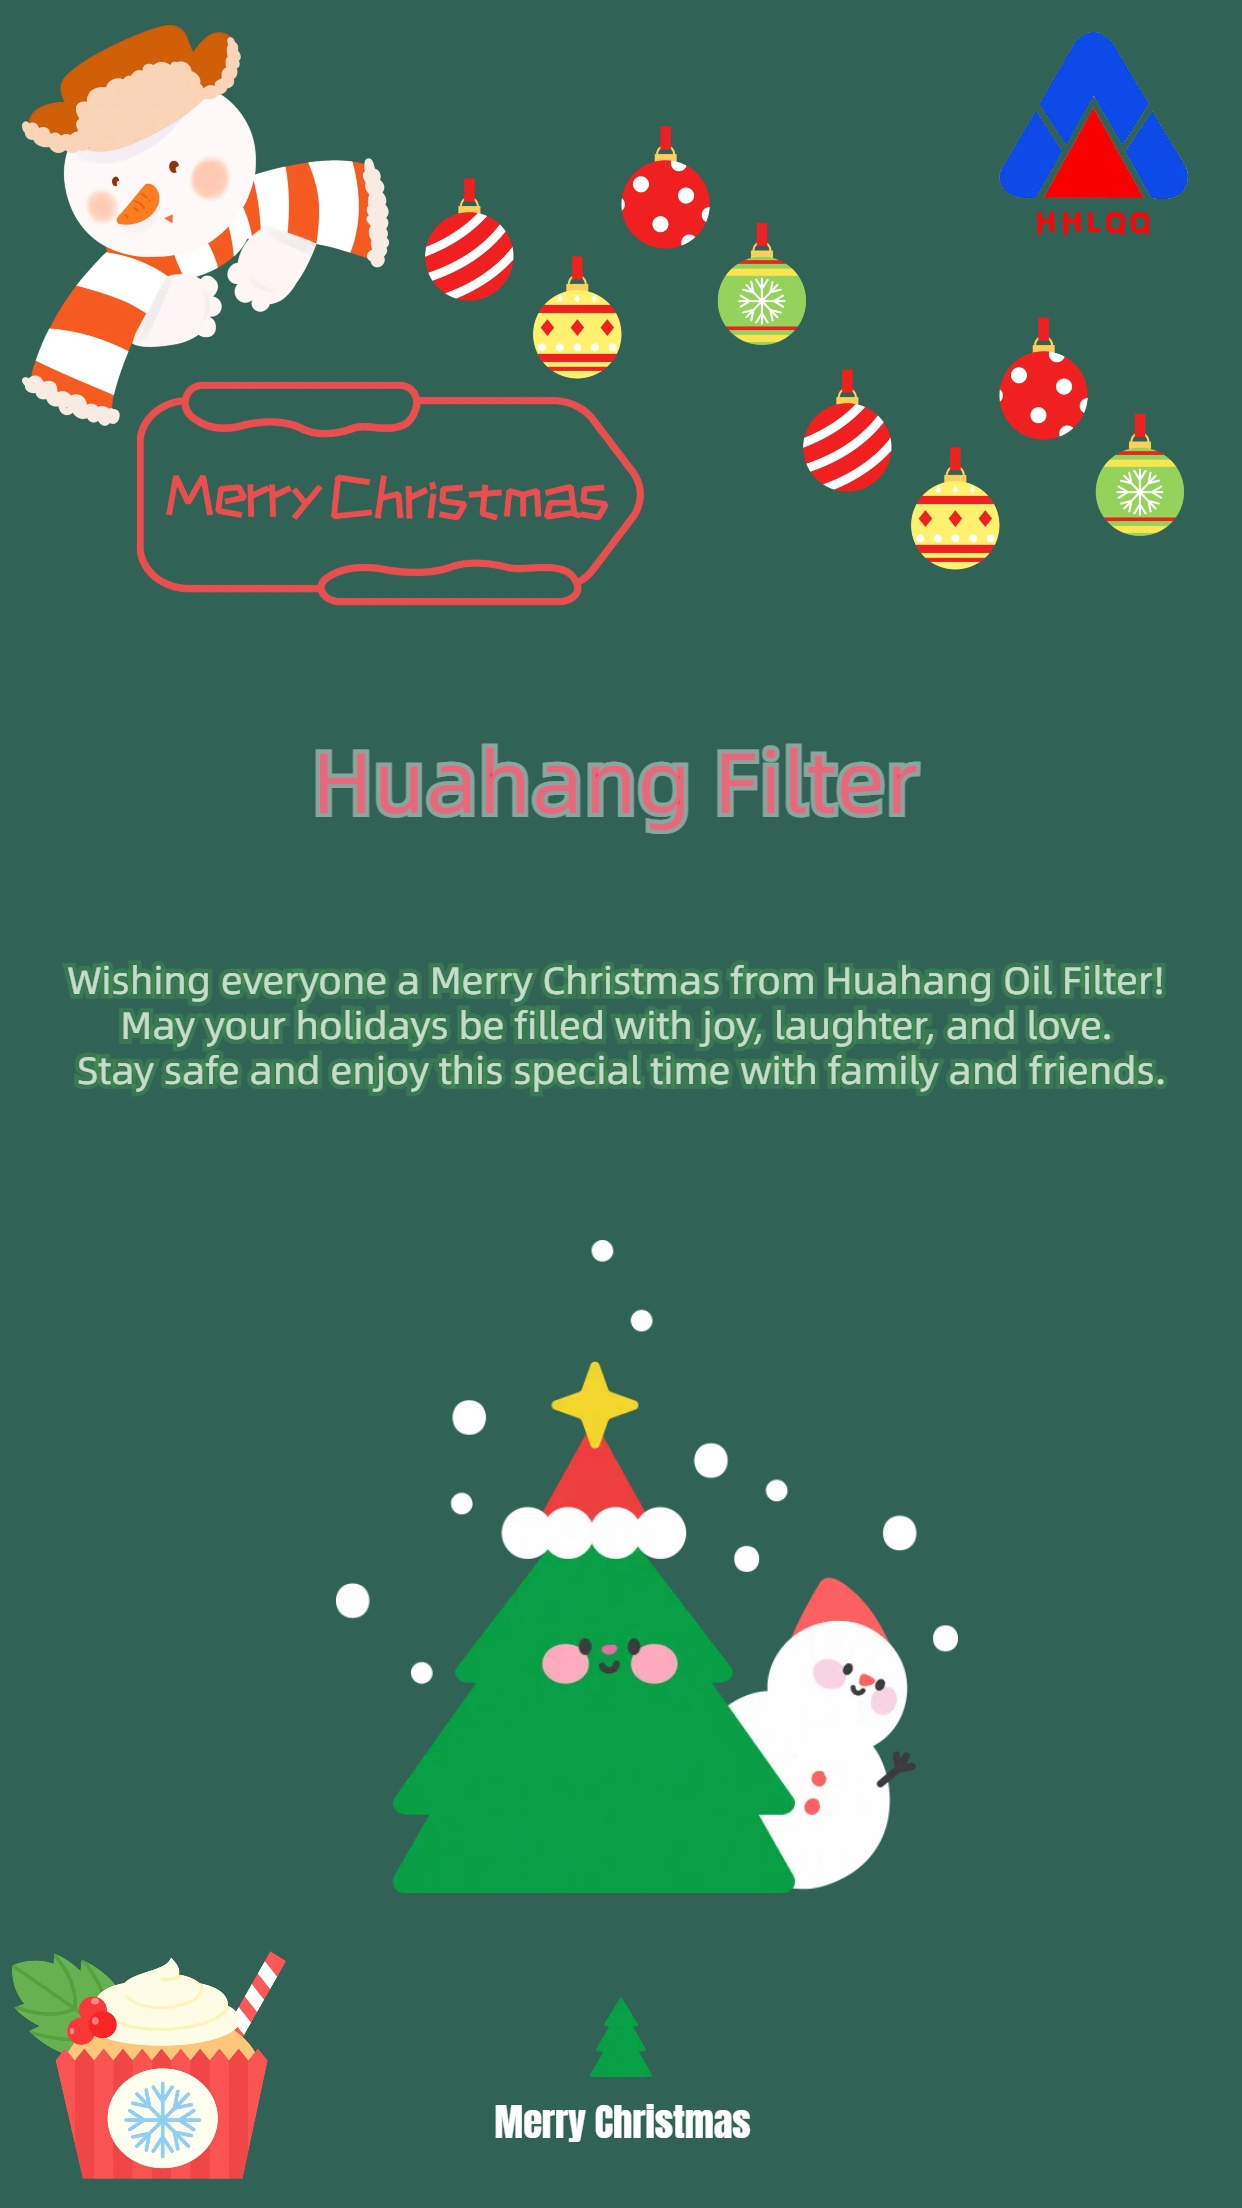 Huahang Filter les desea a todos una feliz Navidad